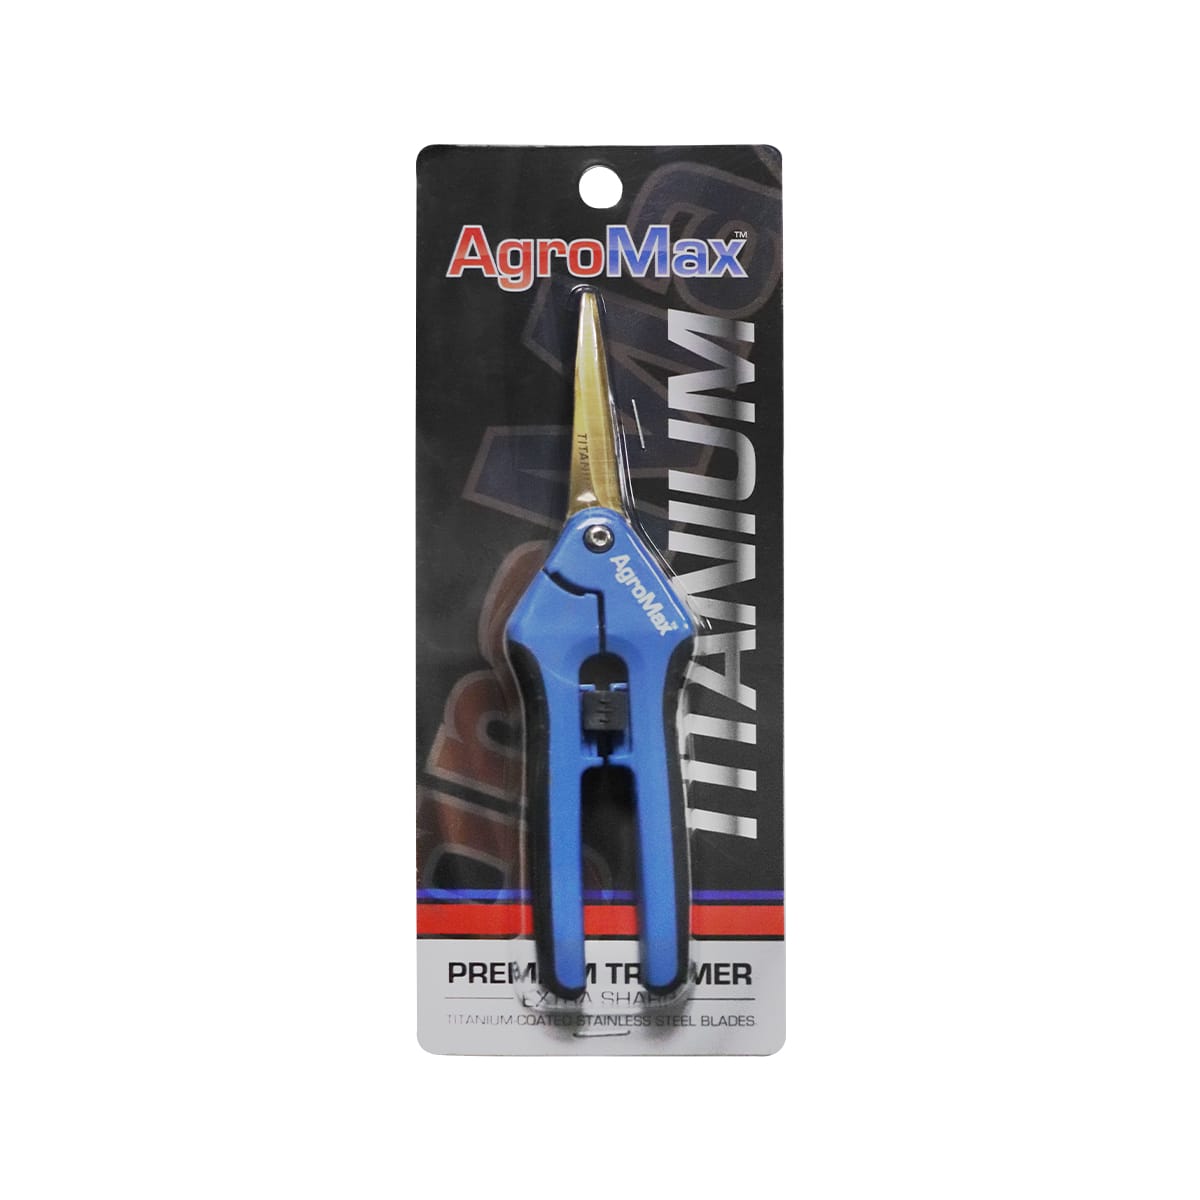 AgroMax Titanium Blade Pruning Scissors